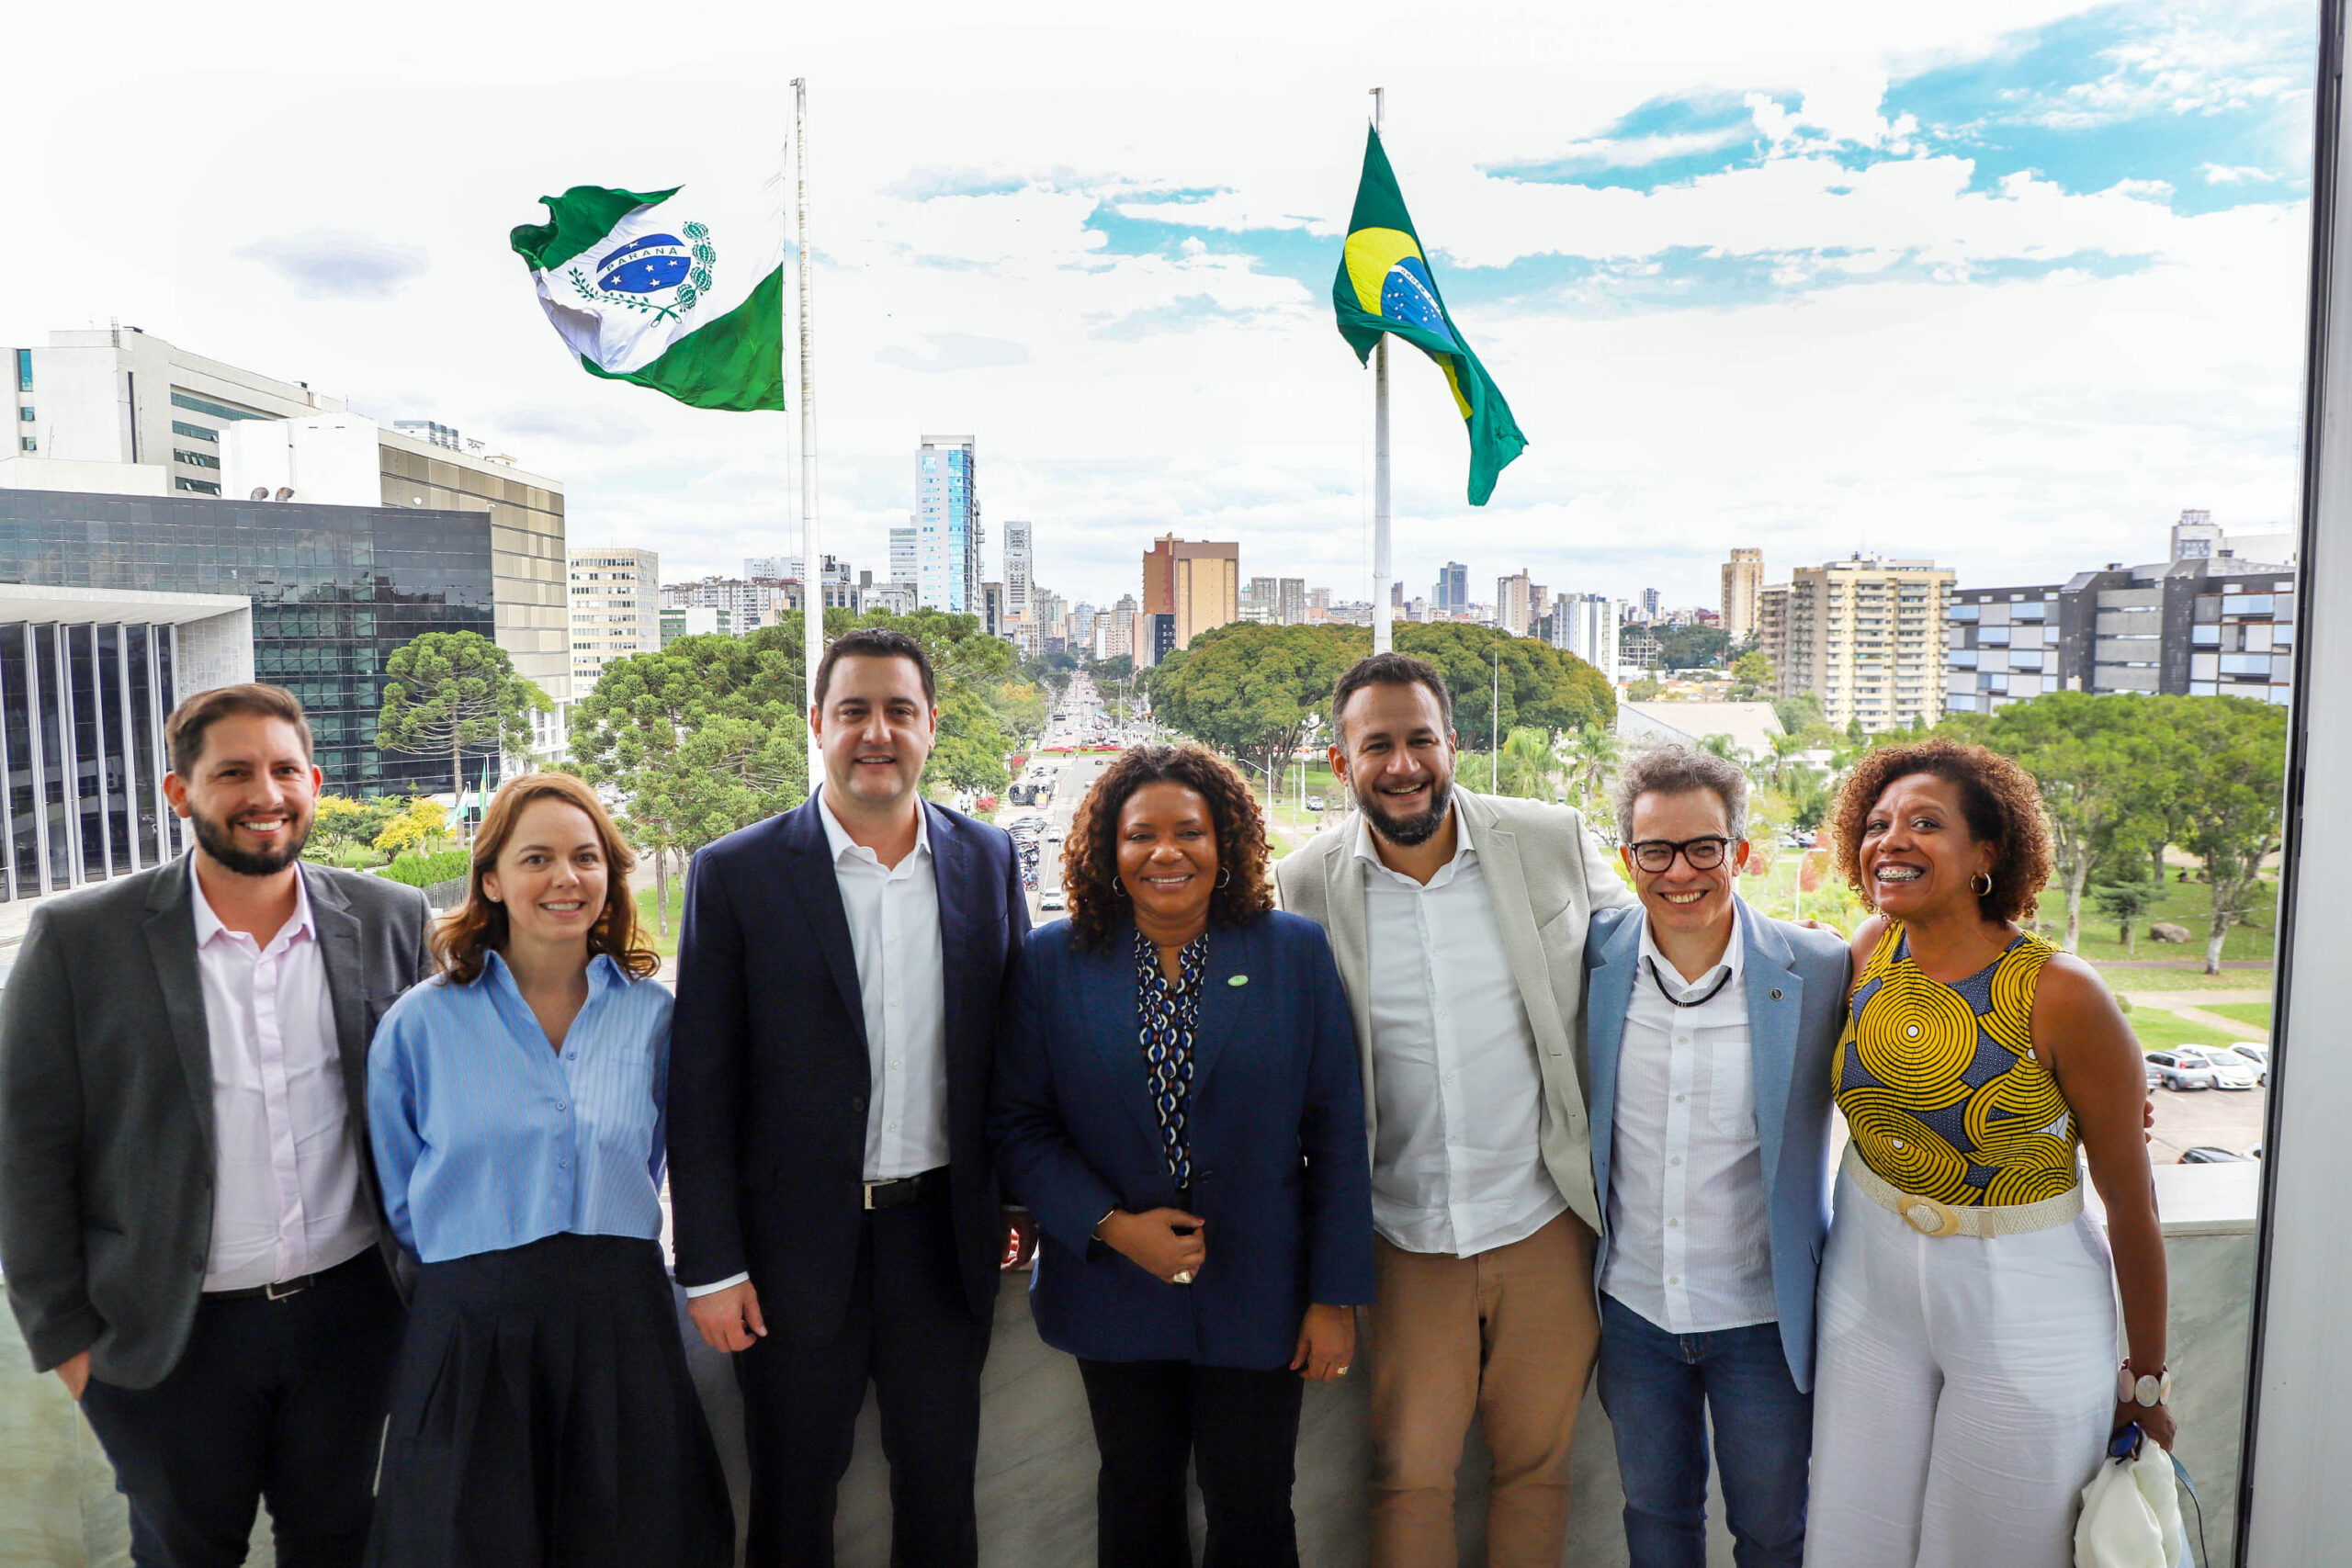 Ministério da Cultura estuda replicar ações do Paraná na área em todo o Brasil